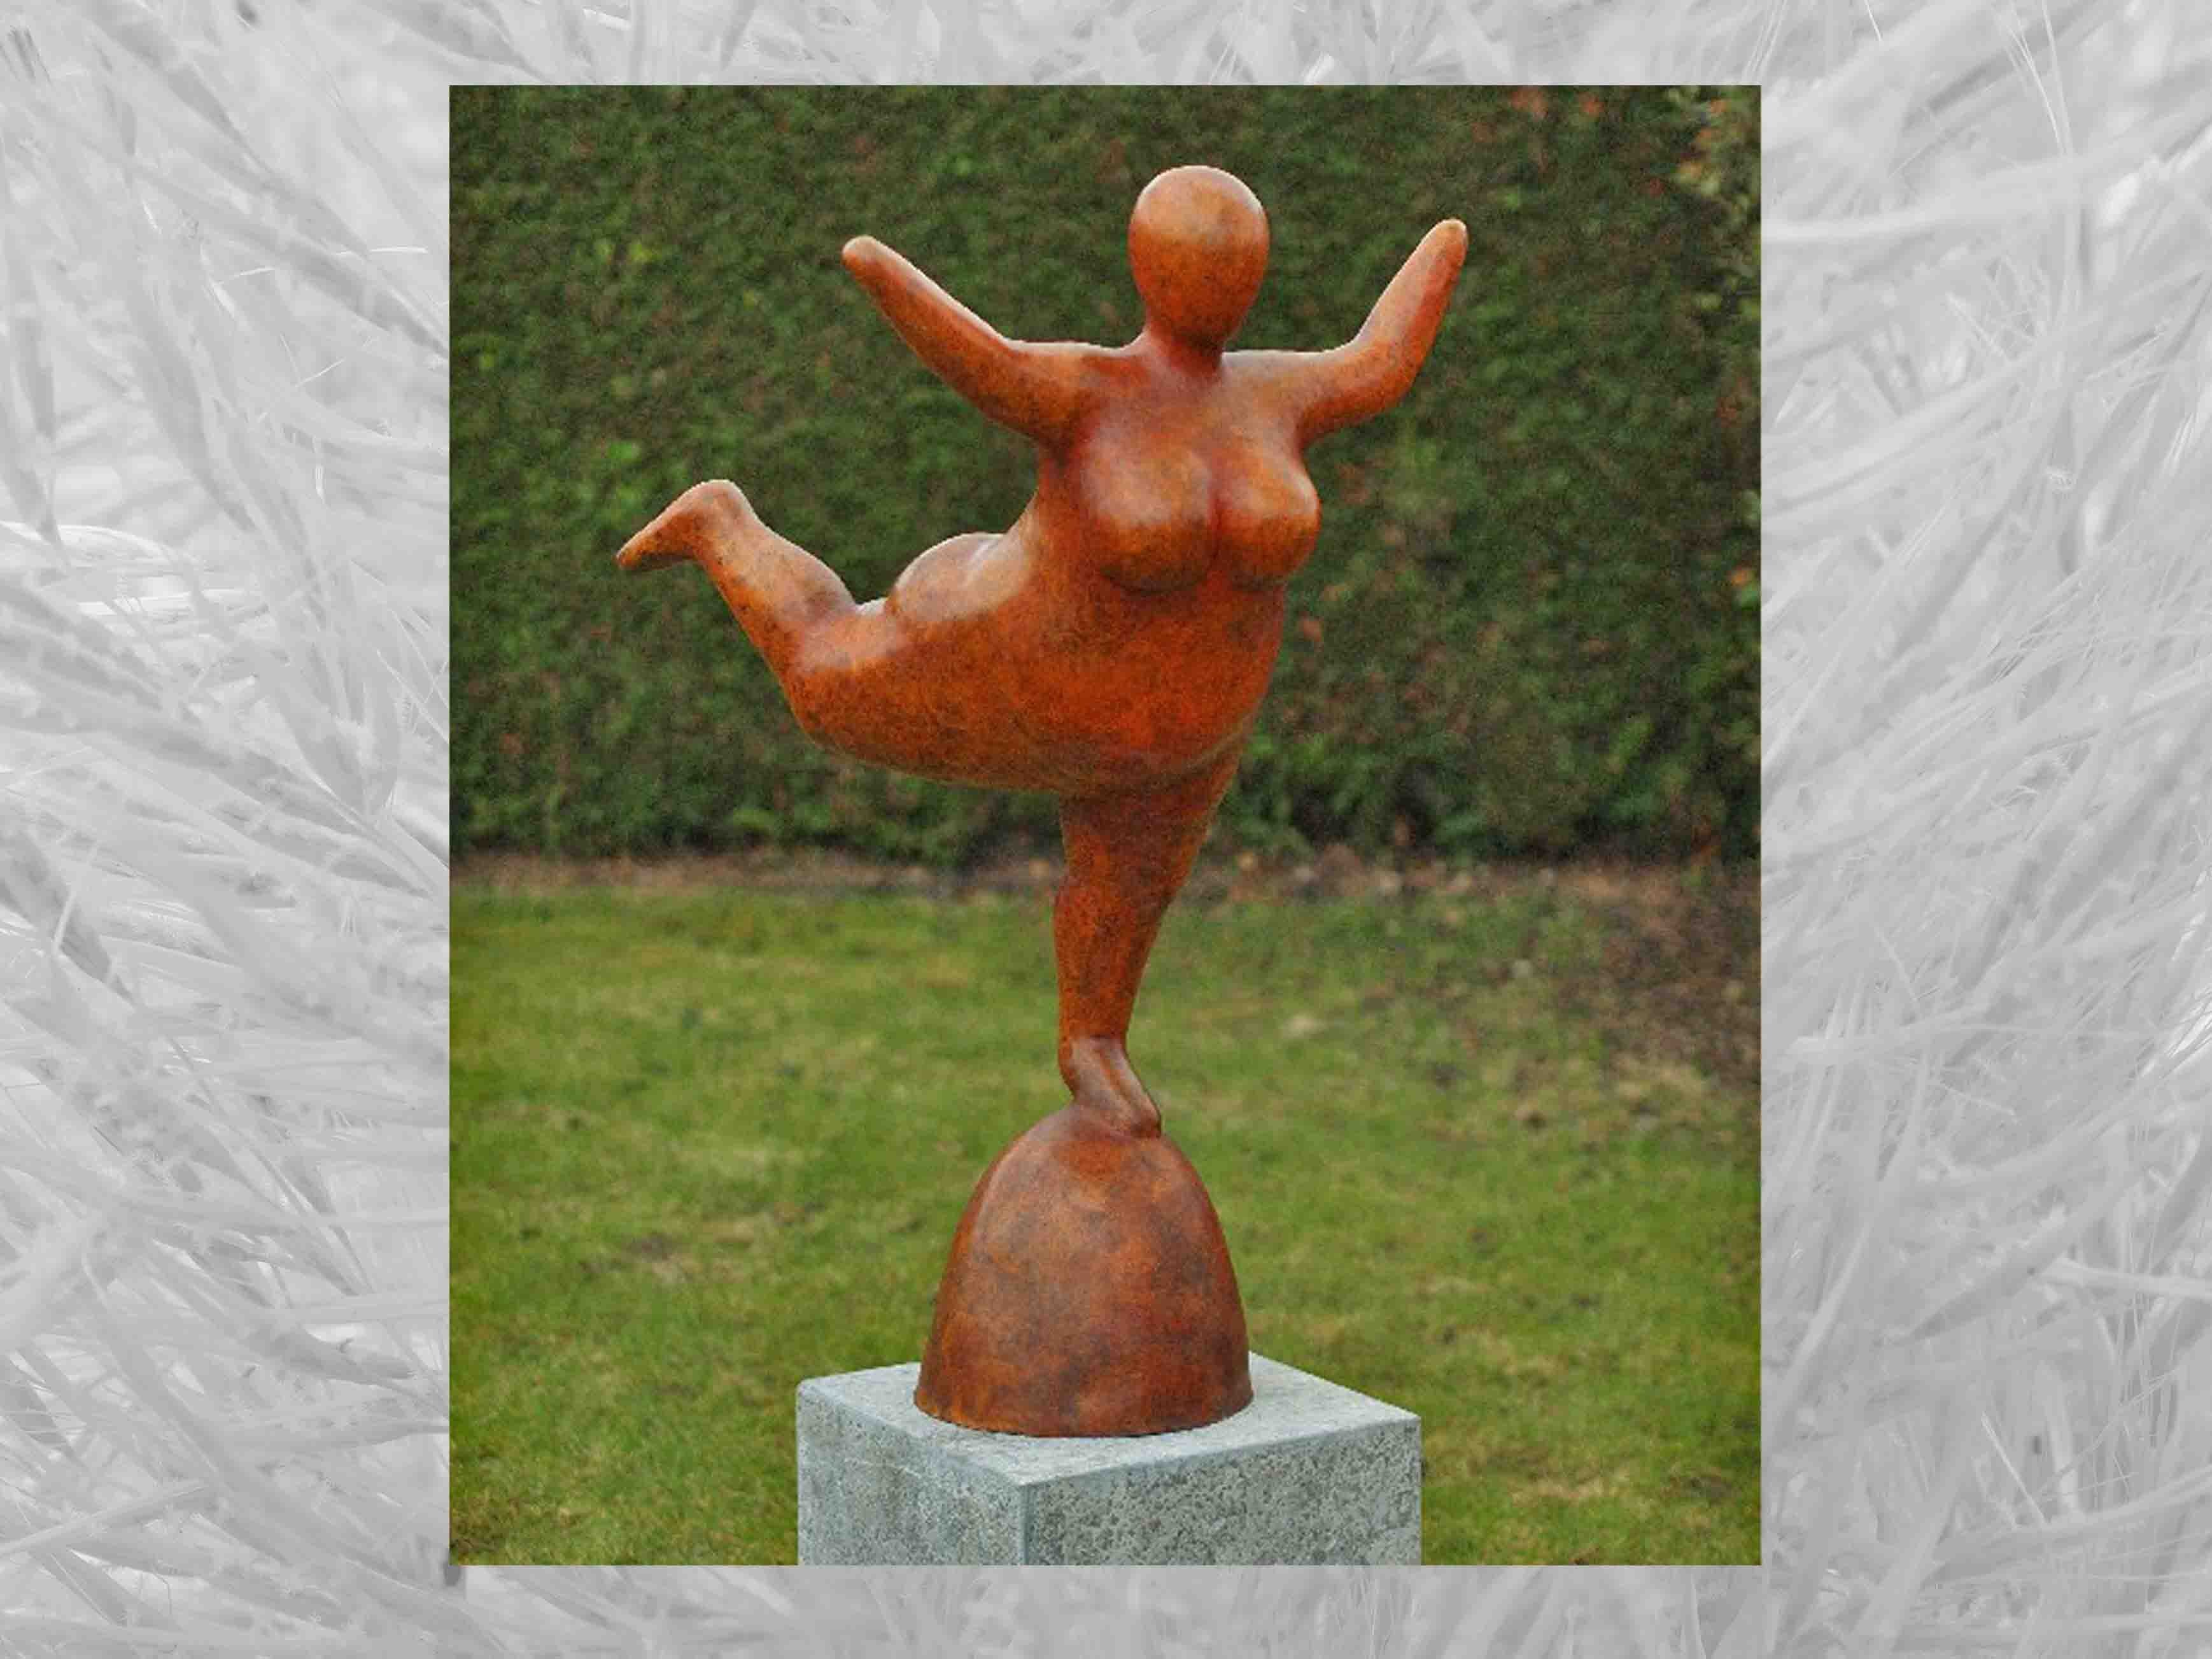 IDYL Gartenfigur IDYL Bronze-Skulptur Große Frau orange heiße Patina, Bronze – sehr robust – Langlebig – witterungsbeständig gegen Frost, Regen und UV-Strahlung. Die Modelle werden in Wachsausschmelzverfahren in Bronze gegossen und von Hand patiniert.